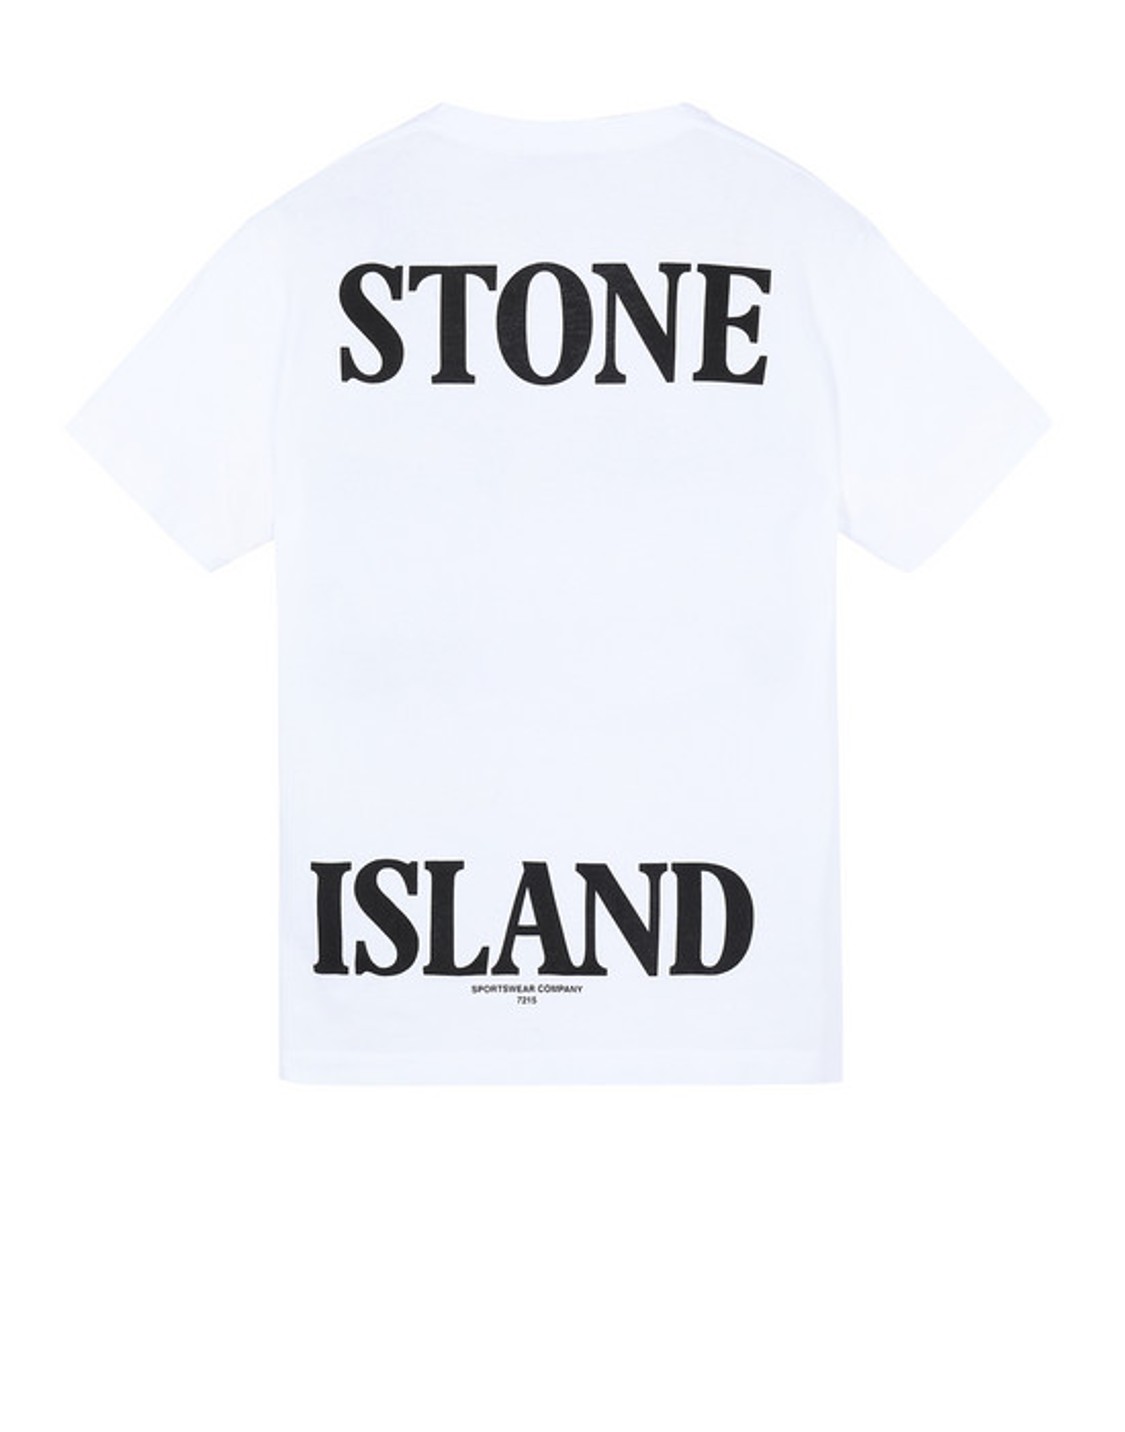 shop STONE ISLAND  T-shirt: Stone Island t-shirt girocollo bianca.
Ricamo sul davanti e stampa Stone Island sul retro.
100% cotone tinto  in capo.
Made in Europe.. 721 52NS89-V0001 number 6376169